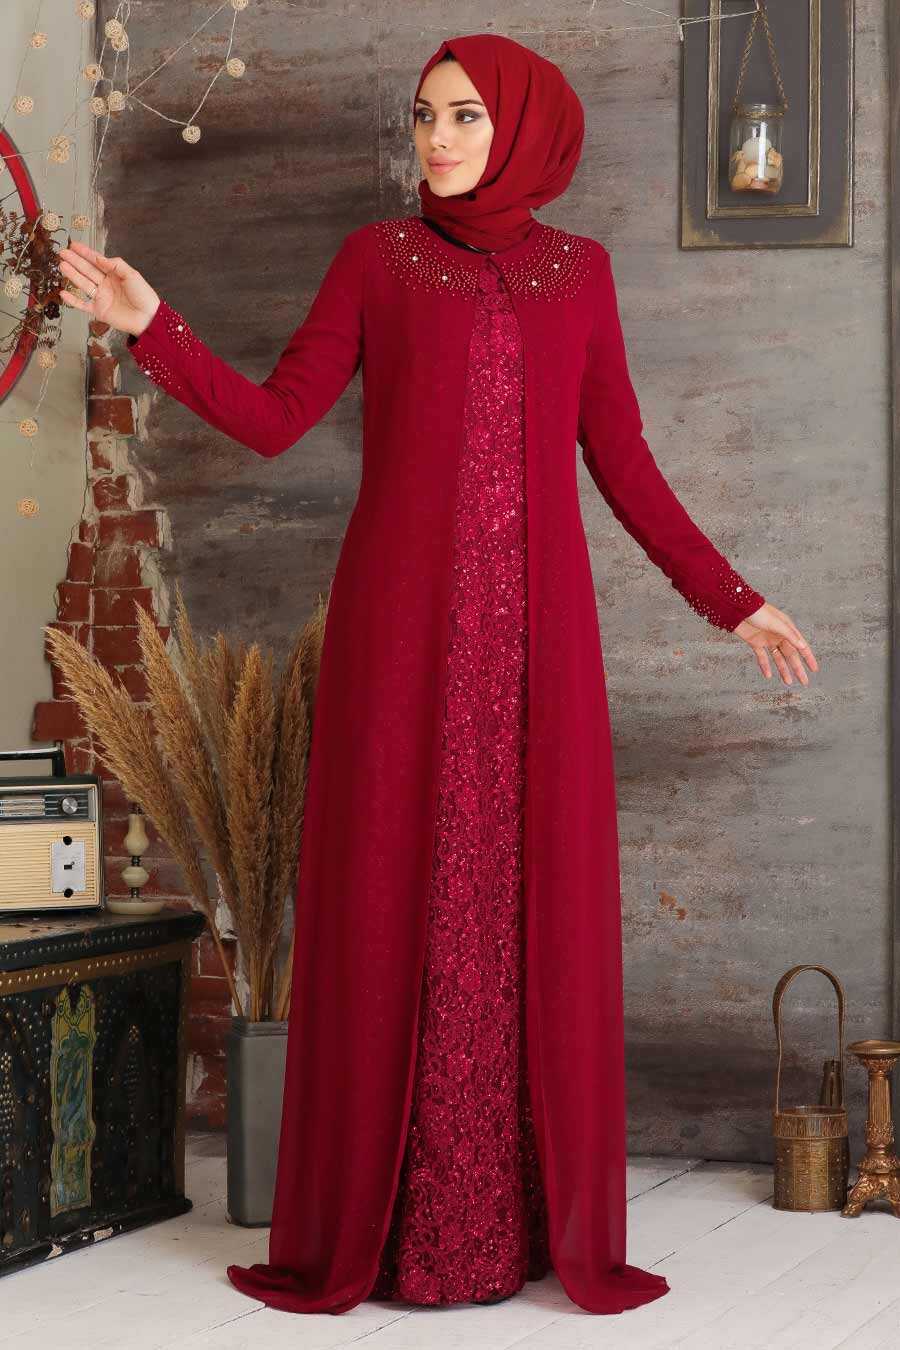 Claret Red Hijab Evening Dress Br Neva Style Com